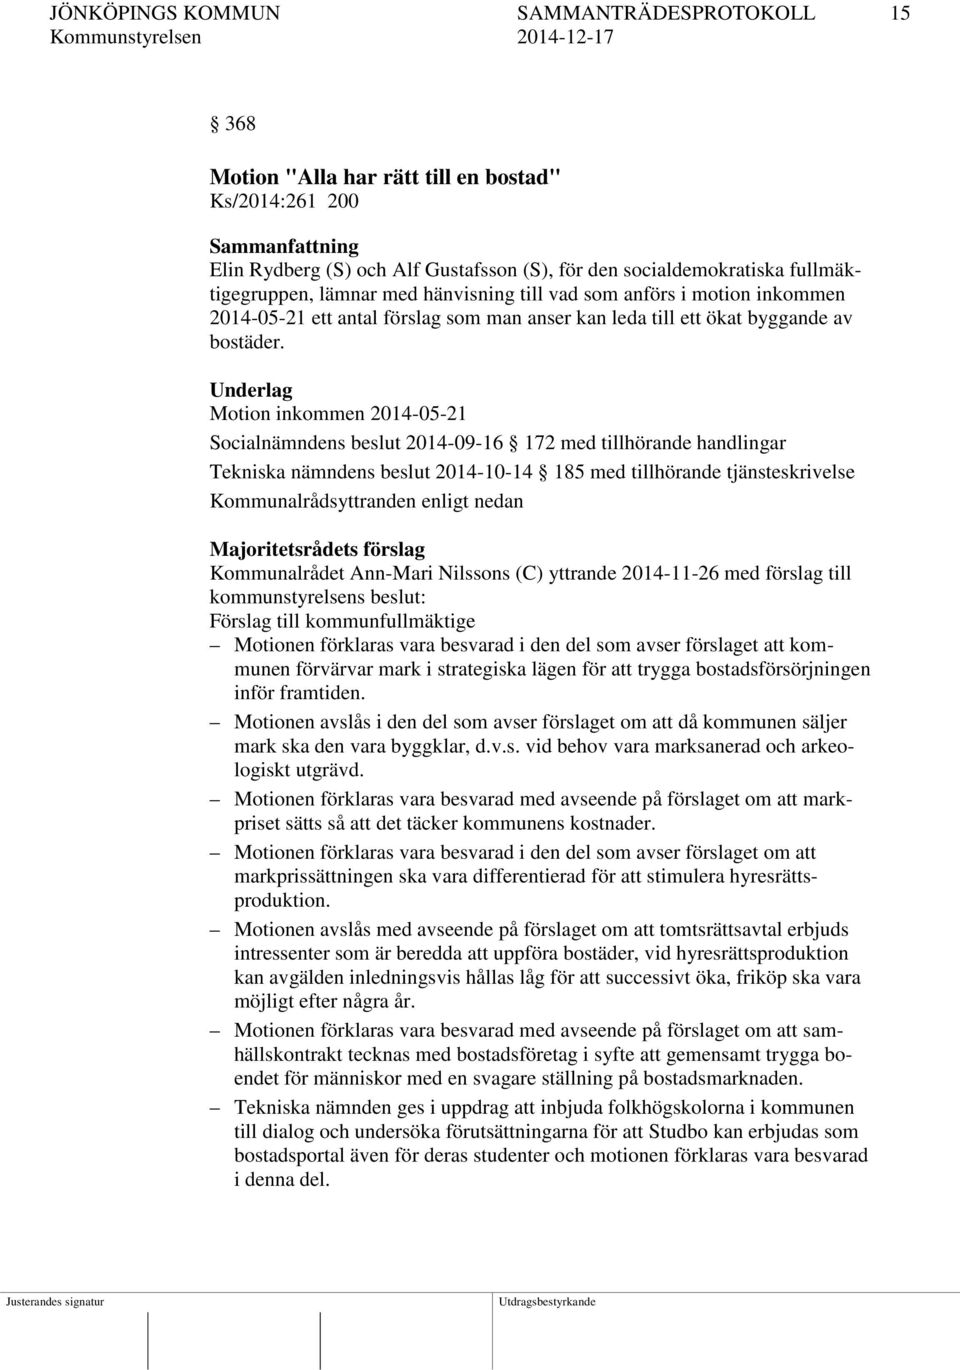 Underlag Motion inkommen 2014-05-21 Socialnämndens beslut 2014-09-16 172 med tillhörande handlingar Tekniska nämndens beslut 2014-10-14 185 med tillhörande tjänsteskrivelse Kommunalrådsyttranden